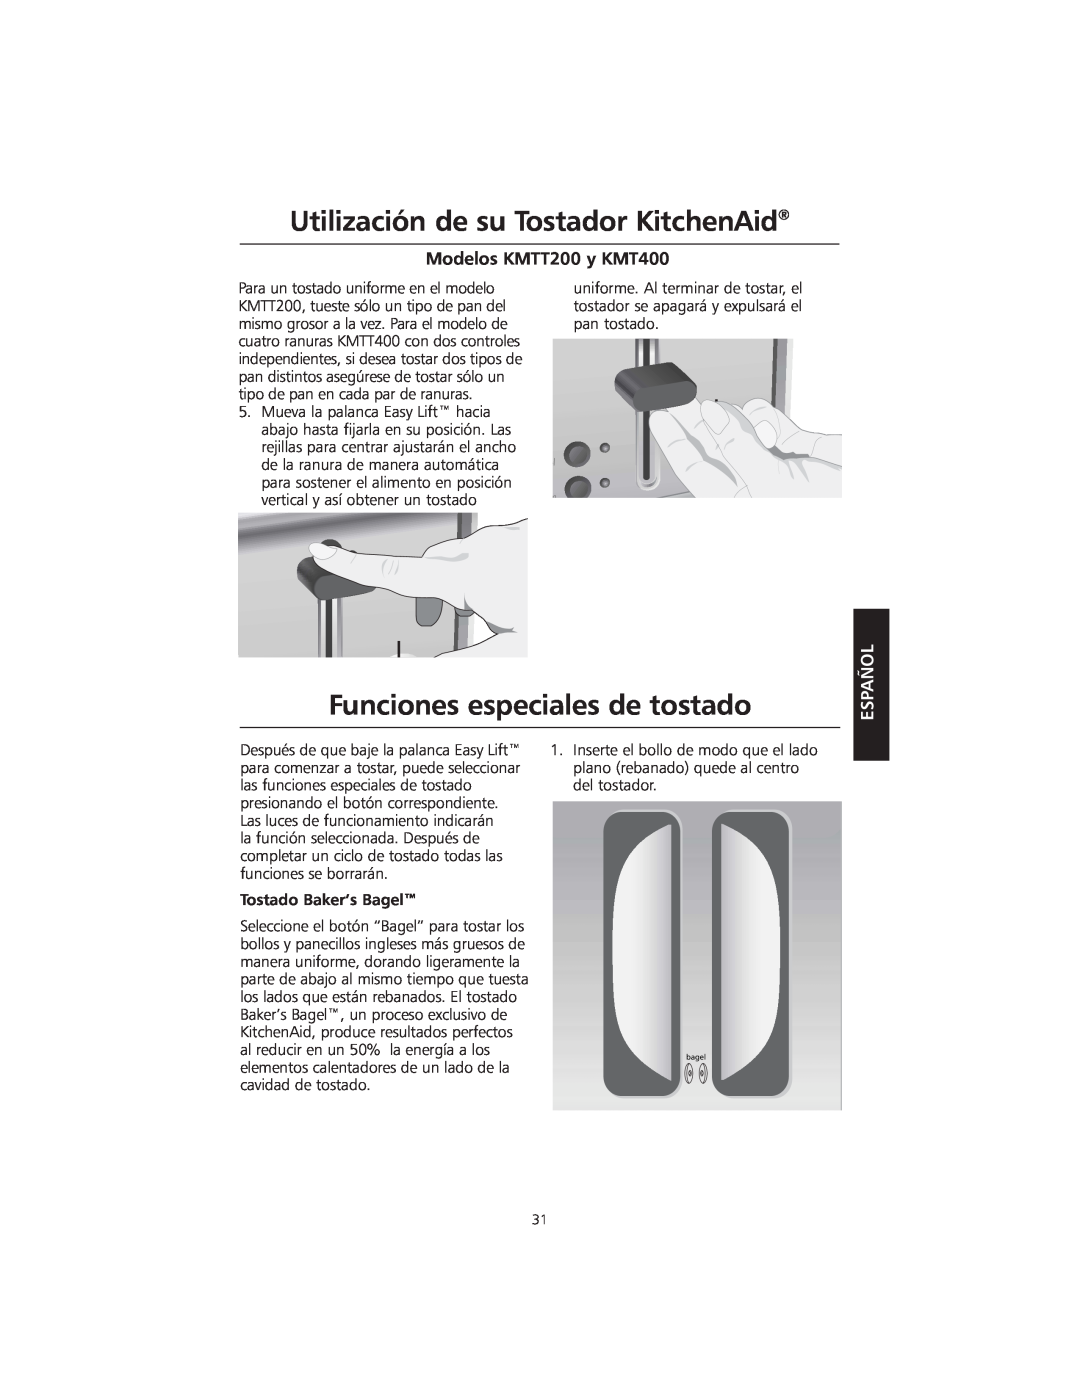 KitchenAid Funciones especiales de tostado, Utilización de su Tostador KitchenAid, Modelos KMTT200 y KMT400, Español 